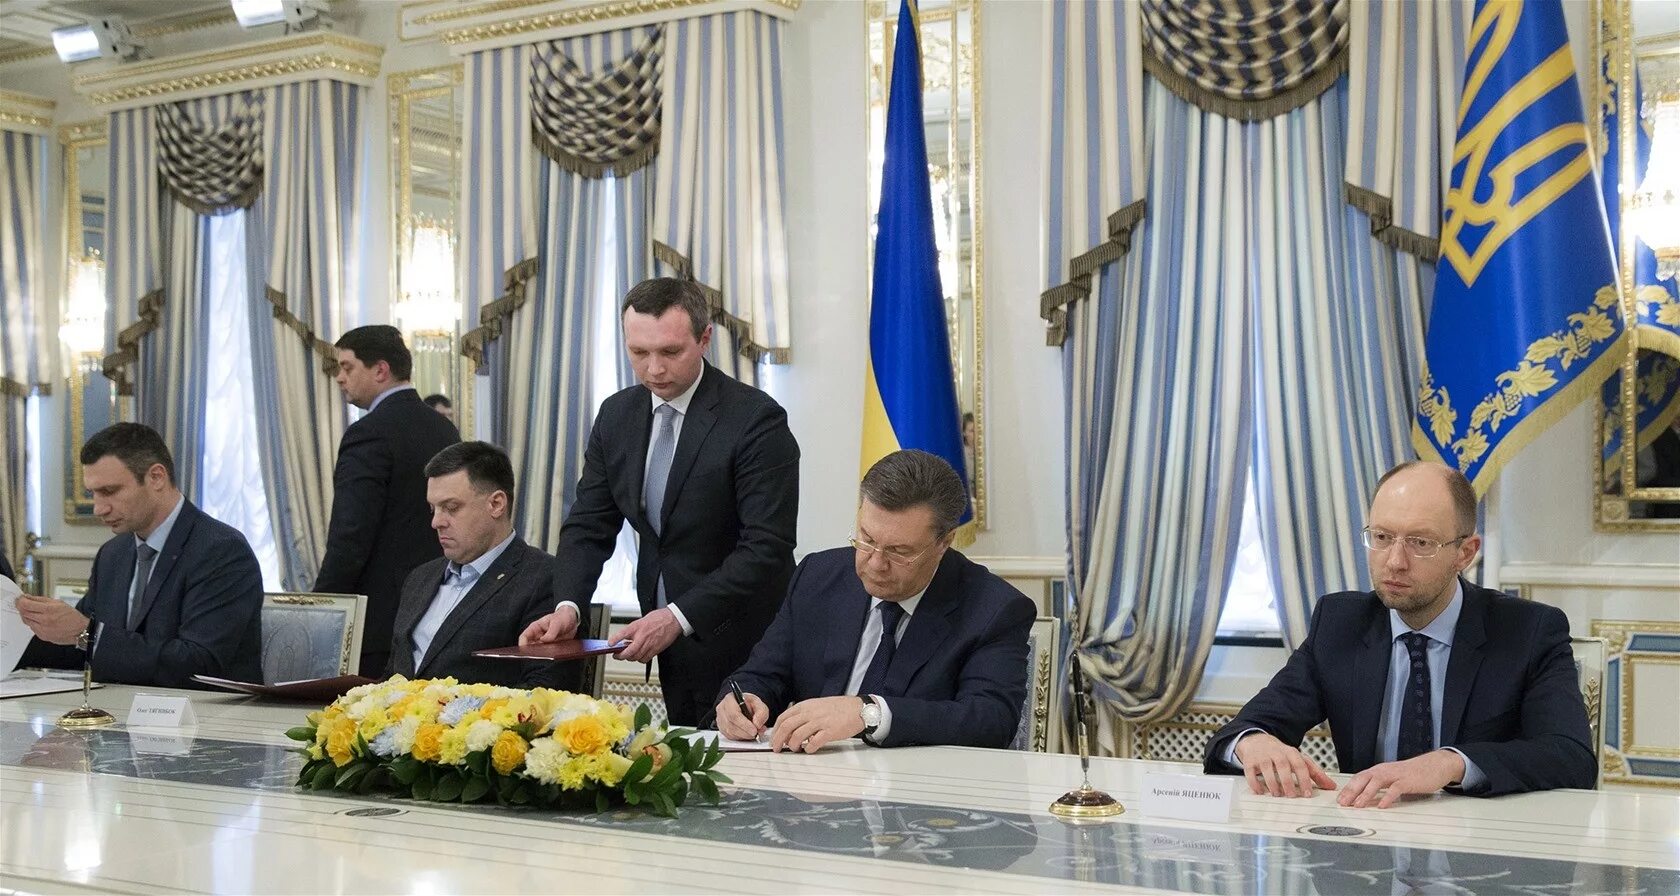 Кличко Тягнибок Яценюк. Янукович Штайнмайер Яценюк. Янукович подписывает соглашение с оппозицией. Майдан кто был президентом